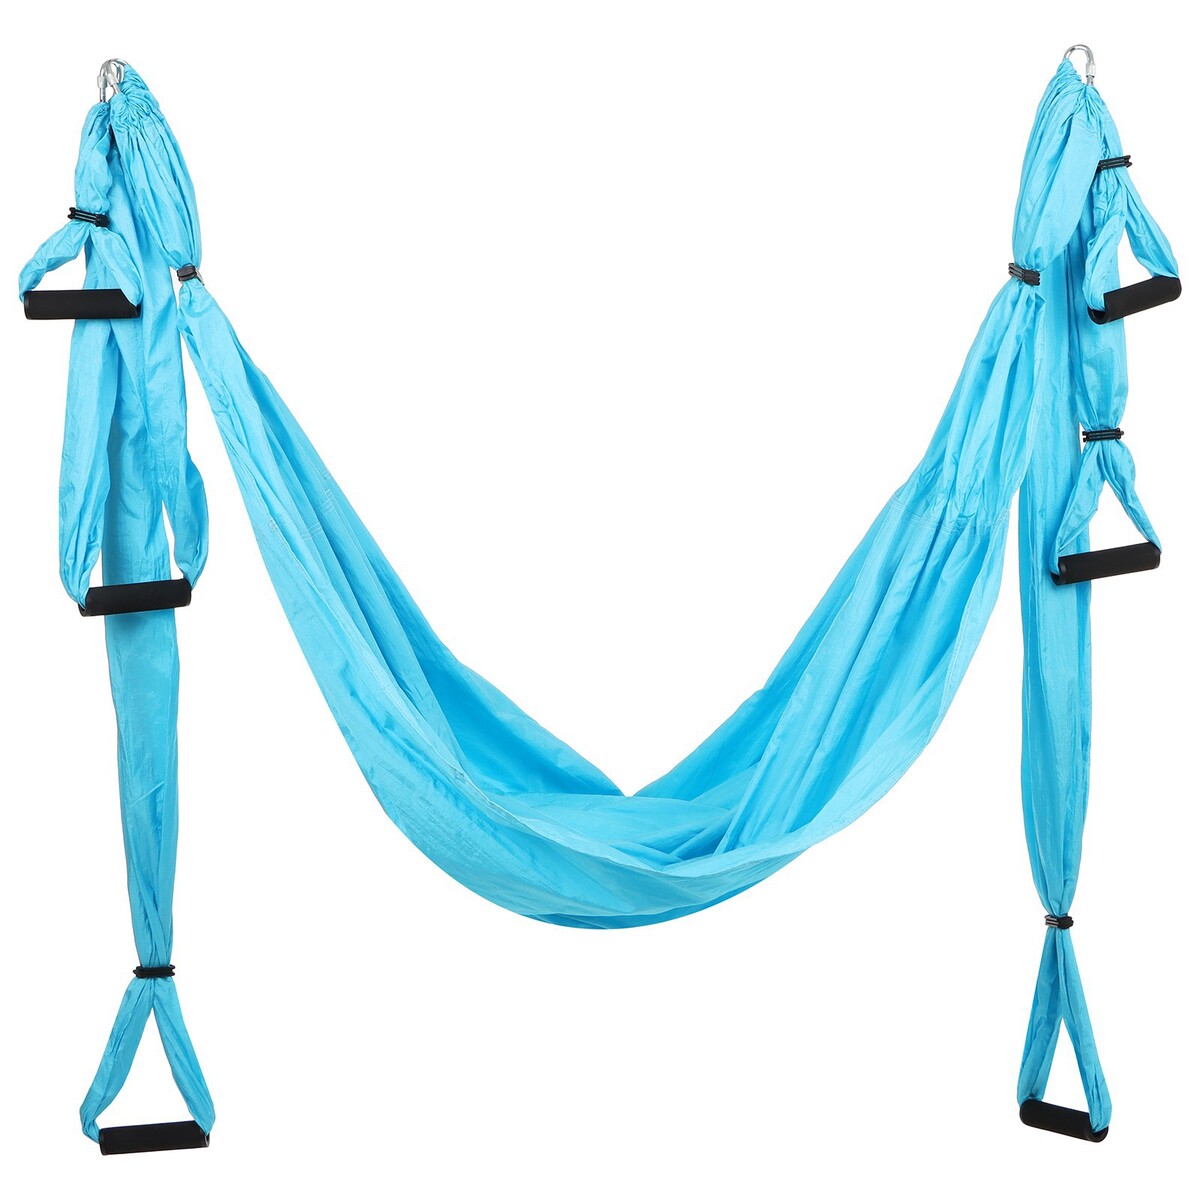 фото Гамак для йоги sangh, 250×140 см, цвет голубой